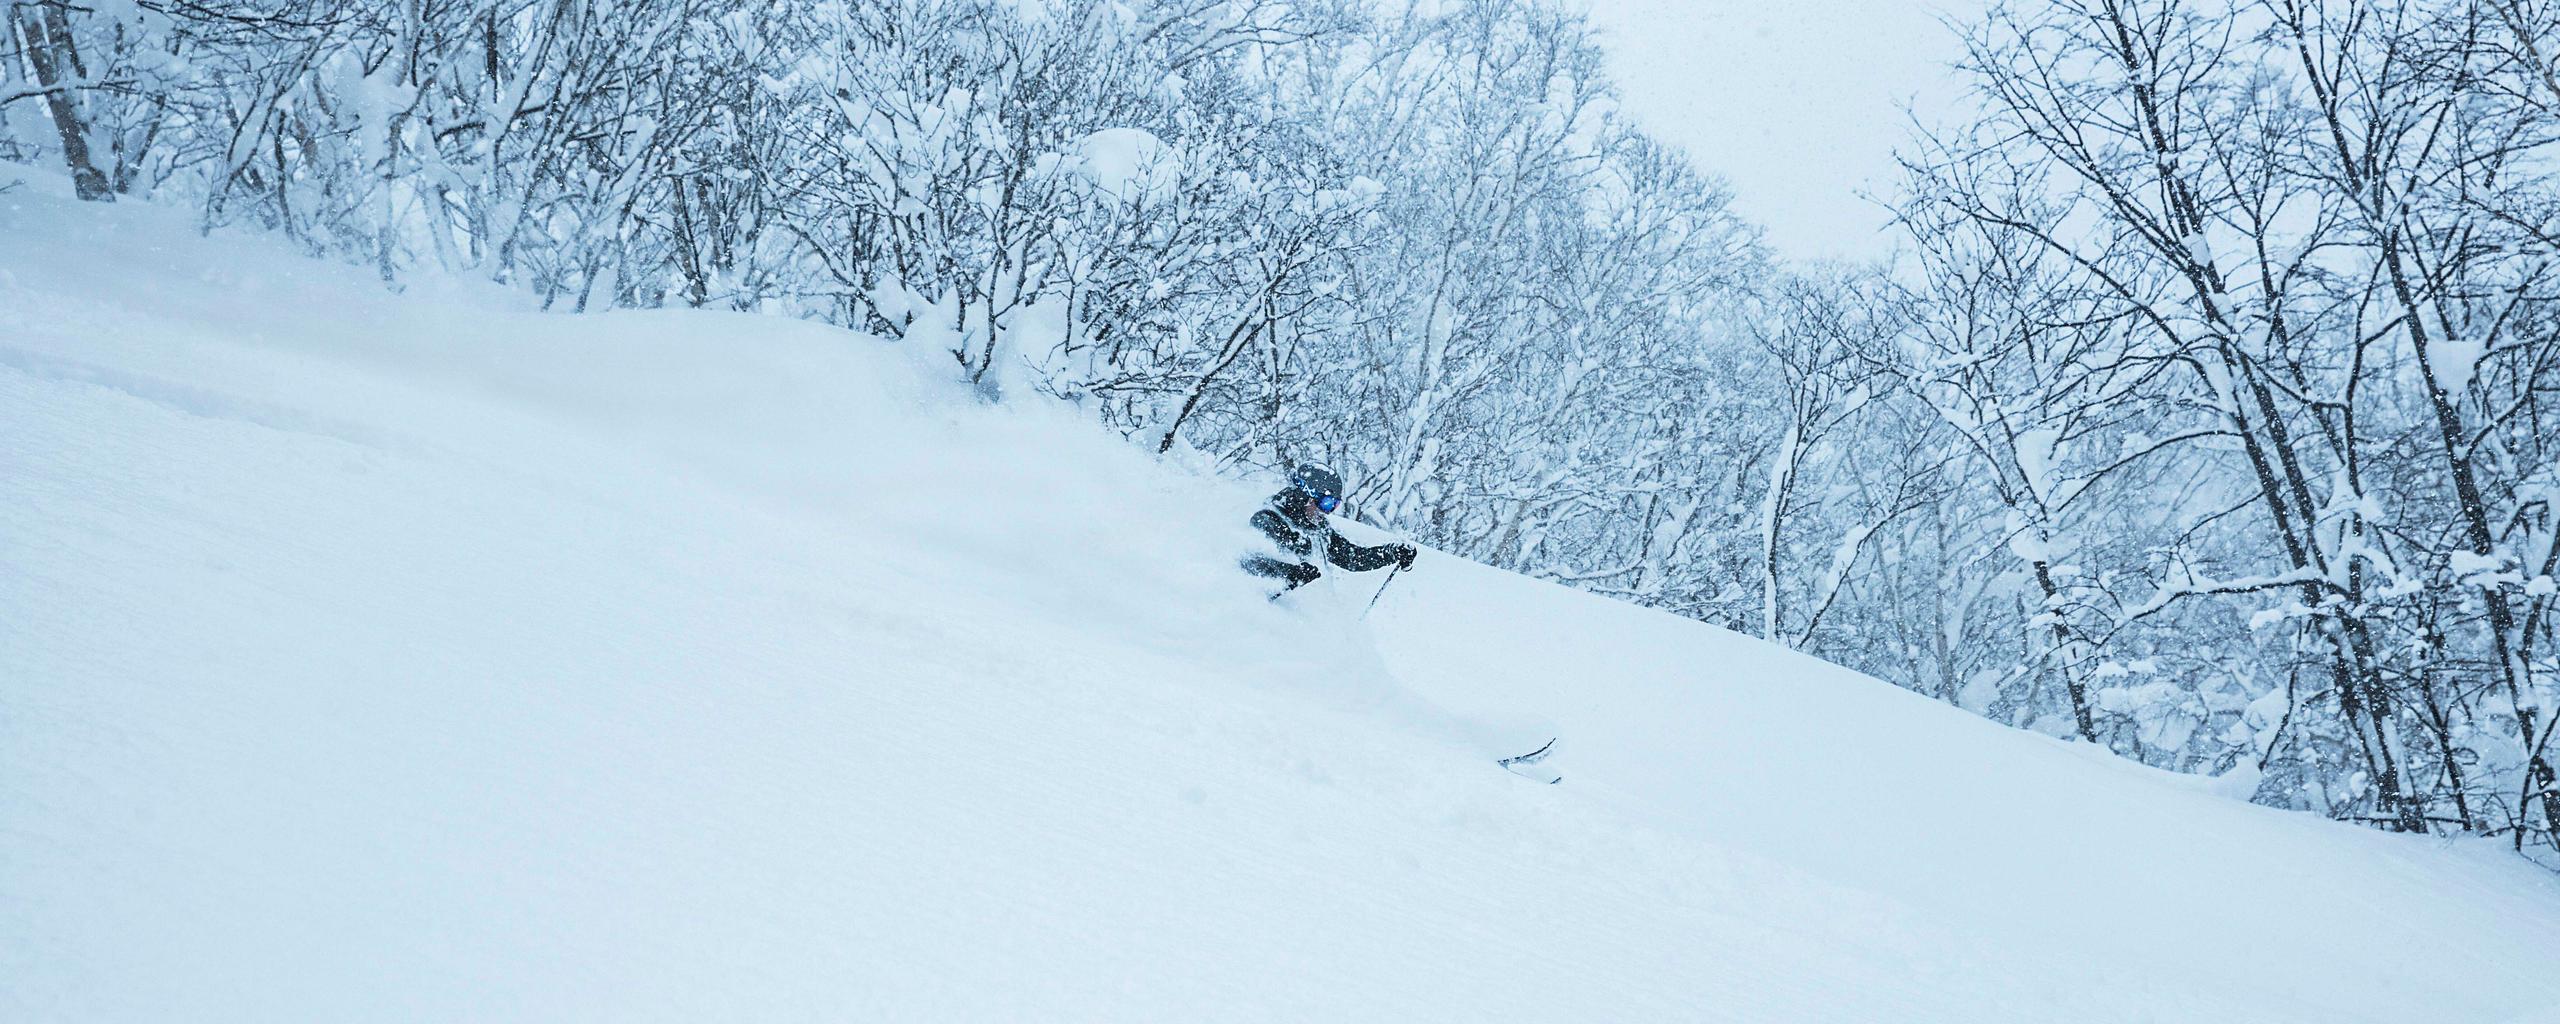 Man skiing in deep snow in Hokkaido Japan